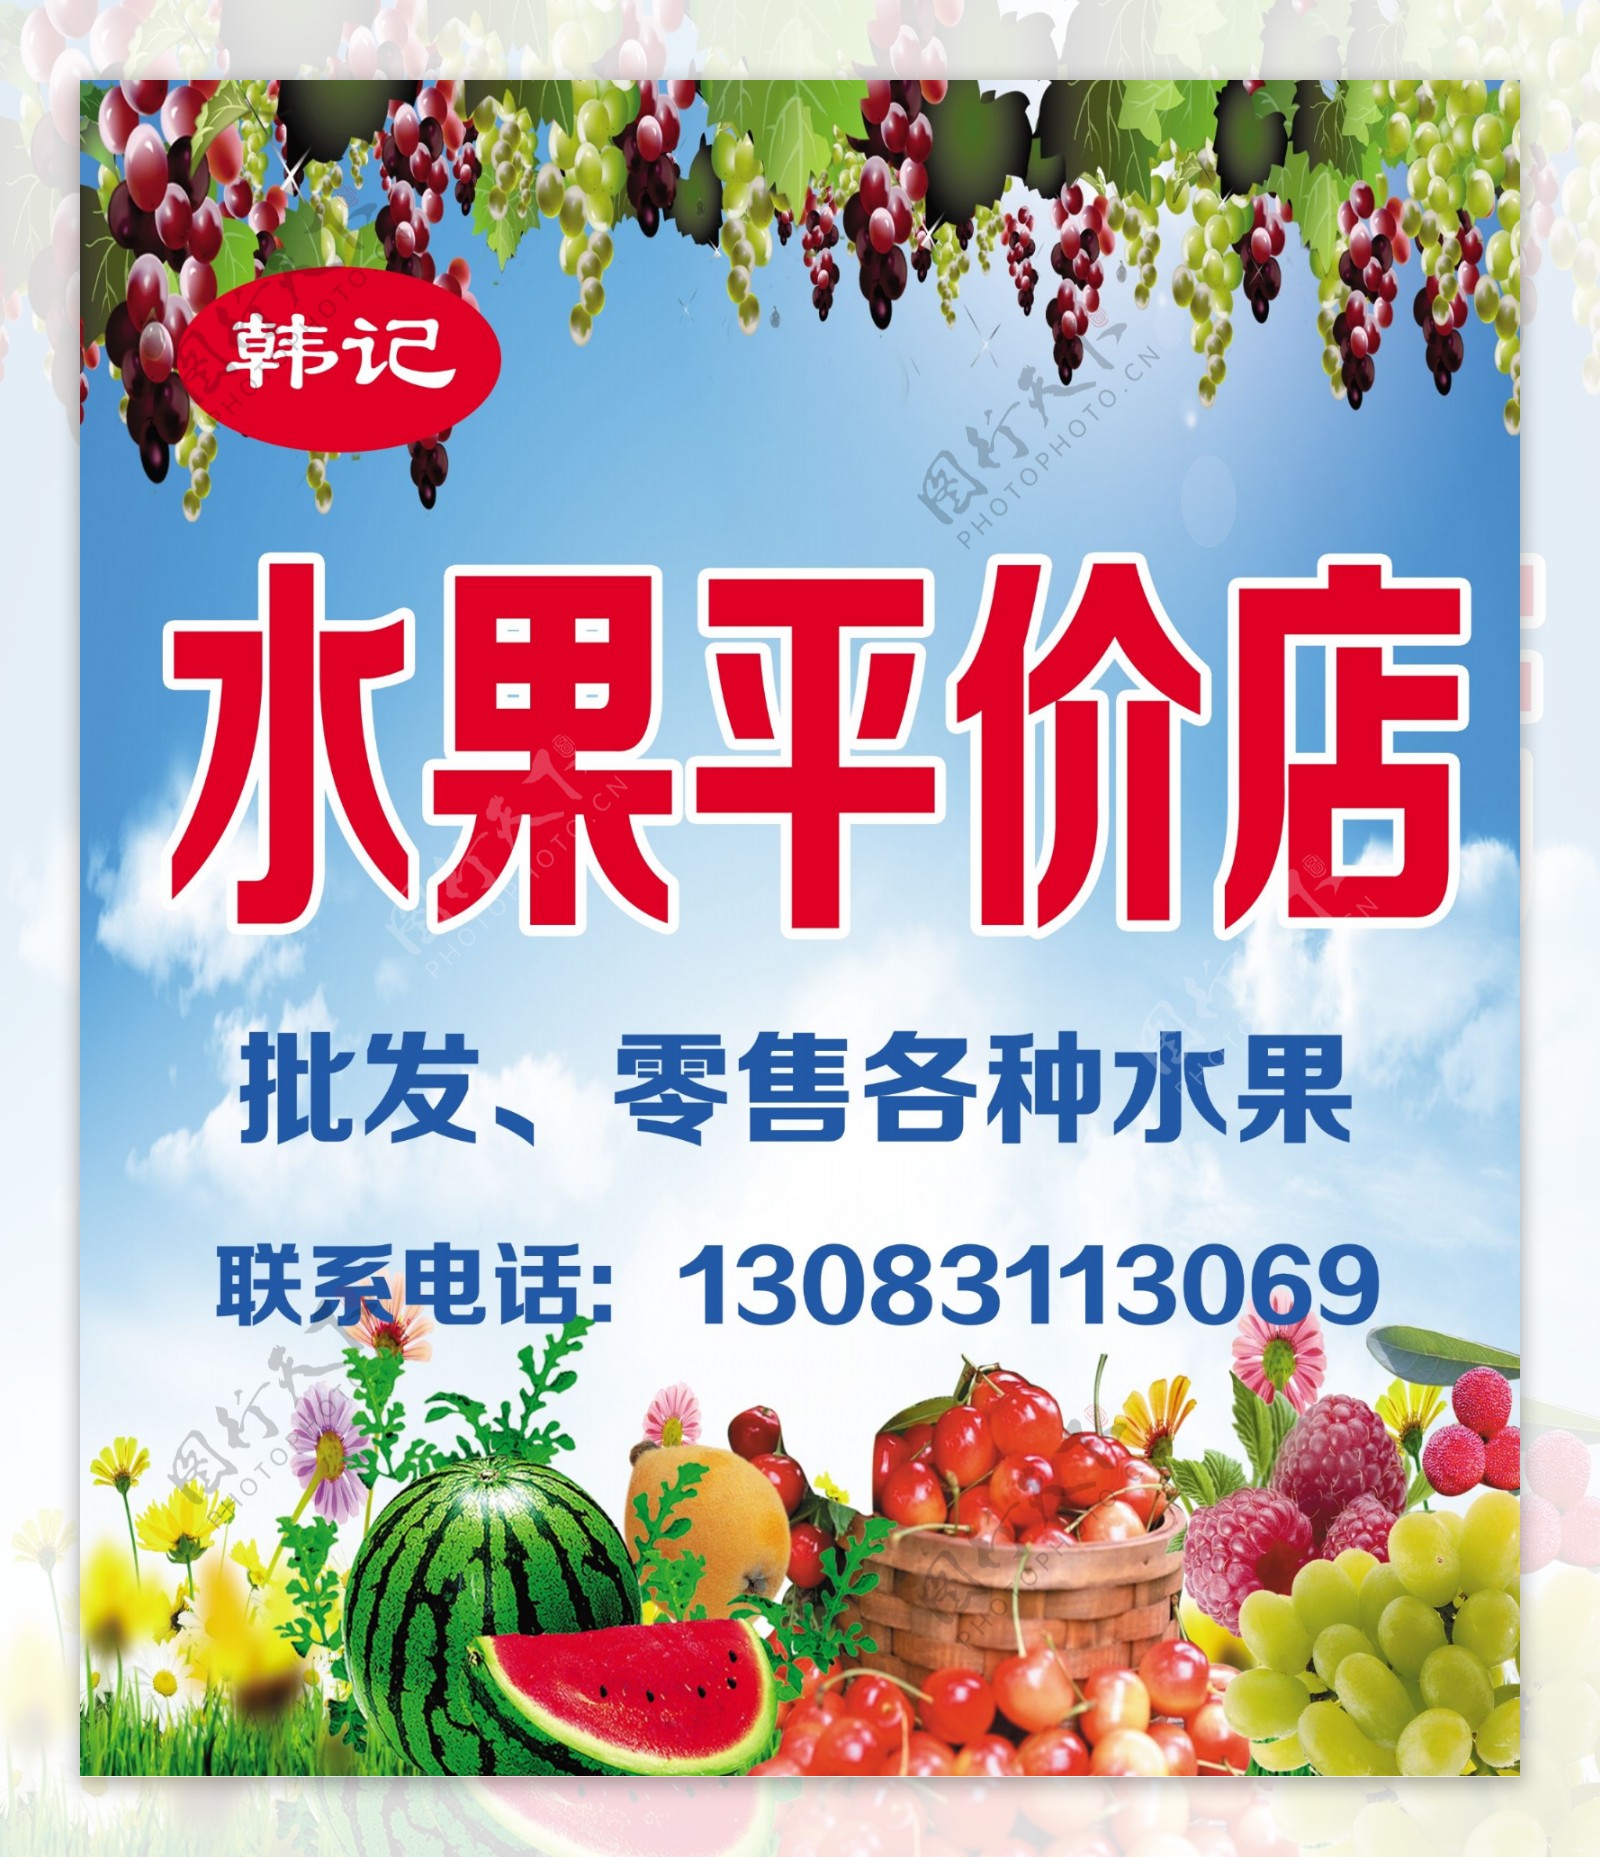 蔬菜水果店招海报